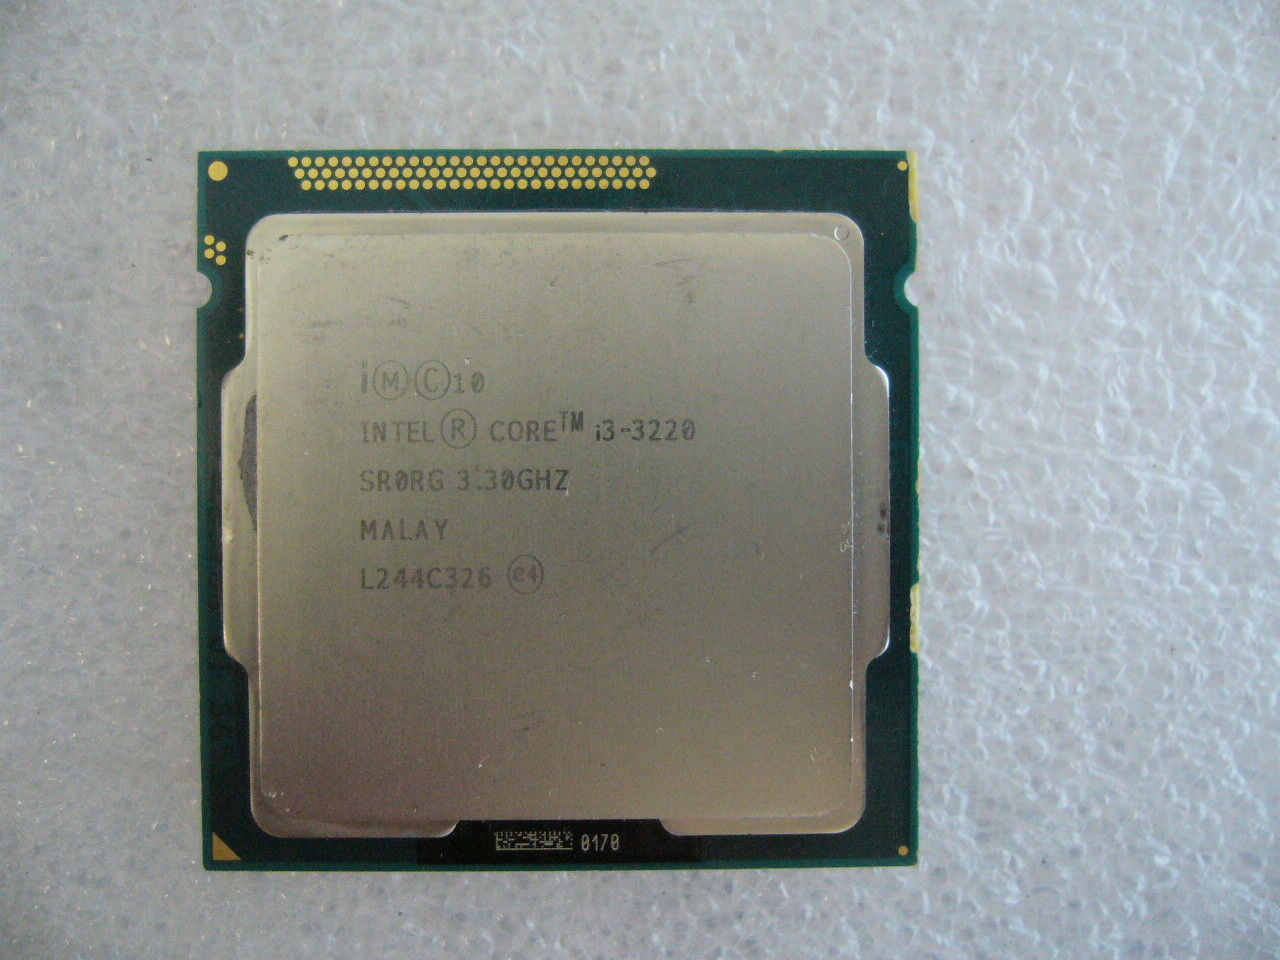 QTY 1x INTEL CPU i3-3220 3.30GHZ/3MB LGA1155 SR0RG NOT WORKING - Click Image to Close